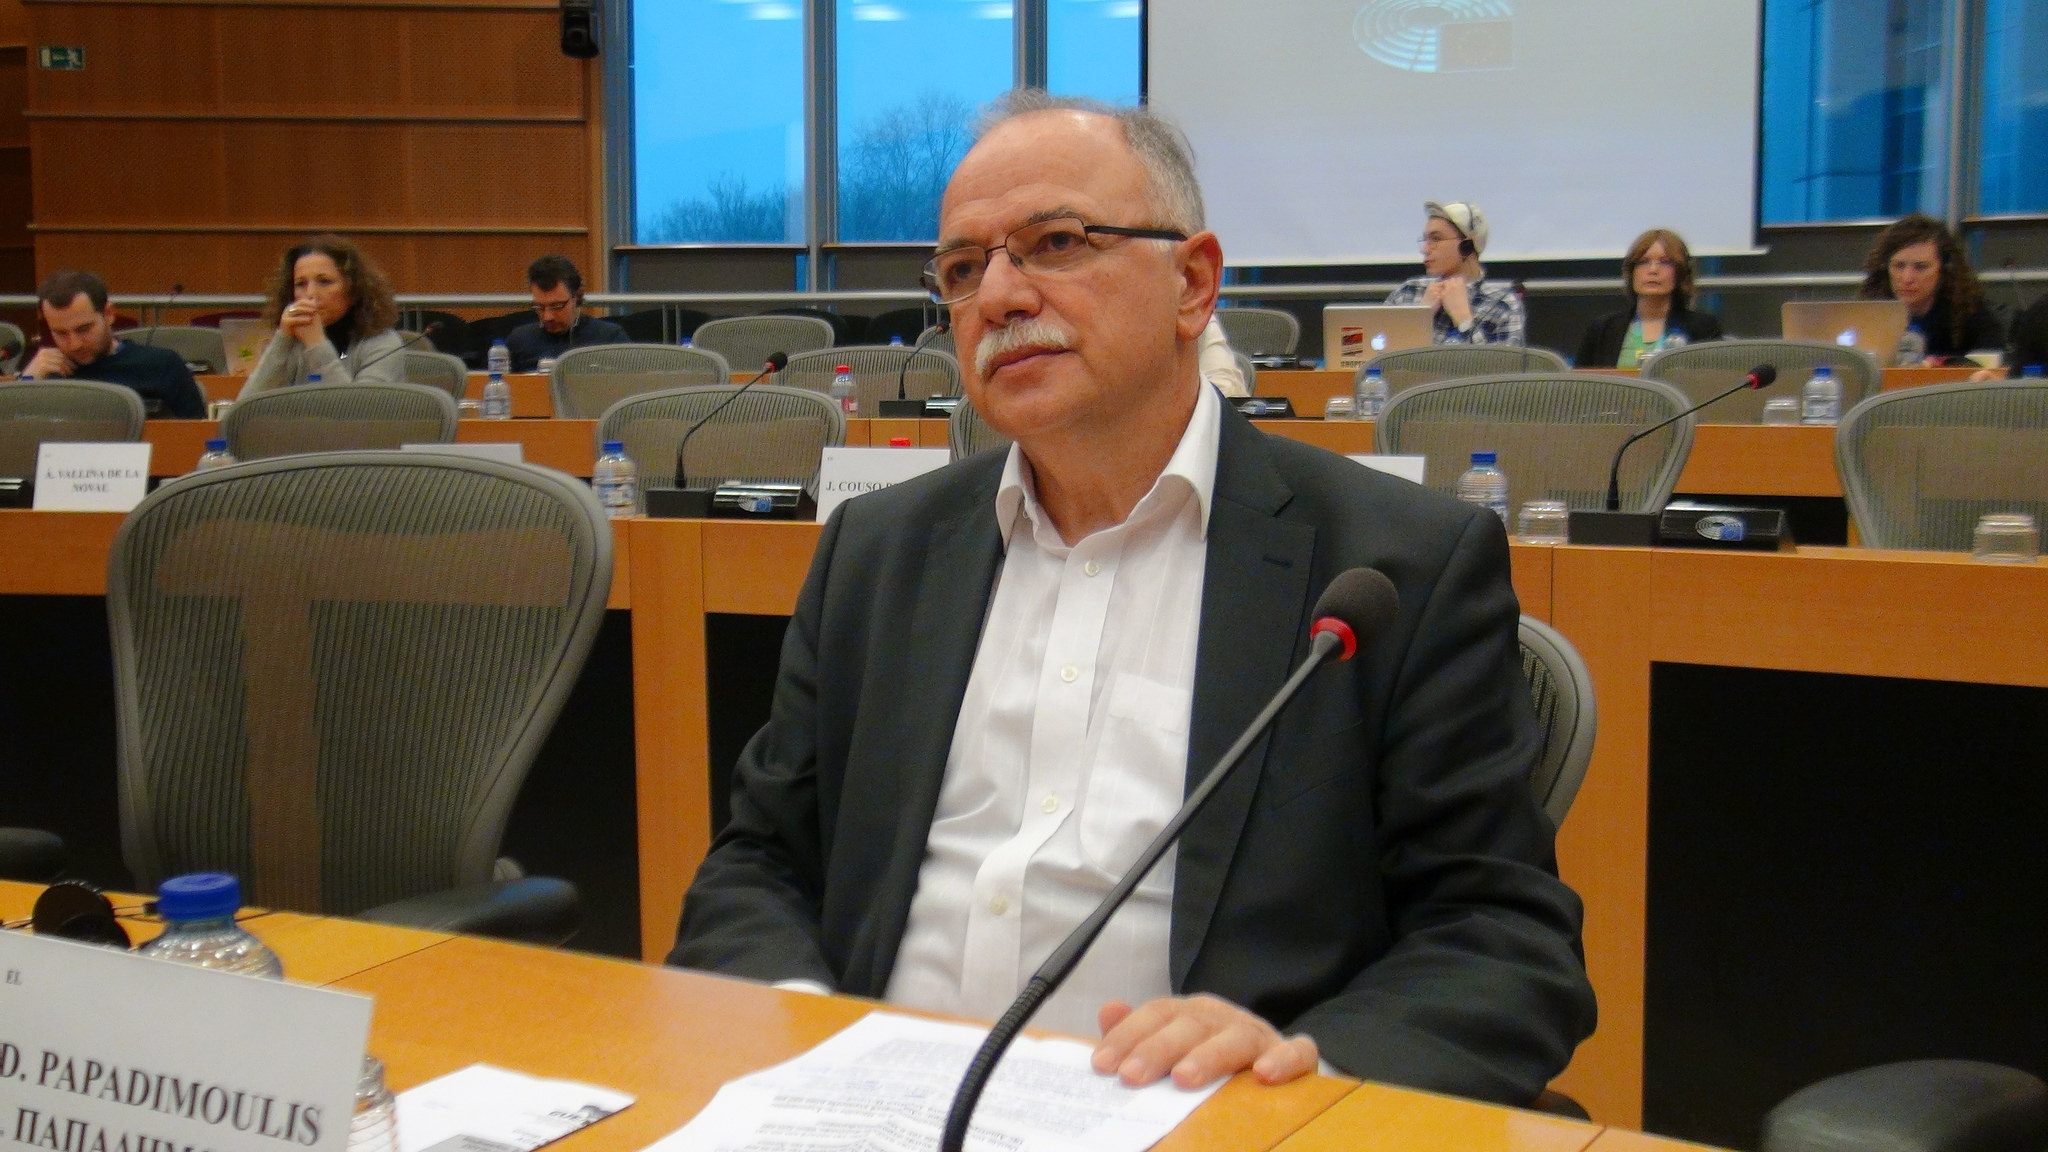 Δημ. Παπαδημούλης: Το ελληνικό πρόγραμμα ανάπτυξης 2019-2023, θα χαράξει τους στόχους για τη μεταμνημονιακή Ελλάδα